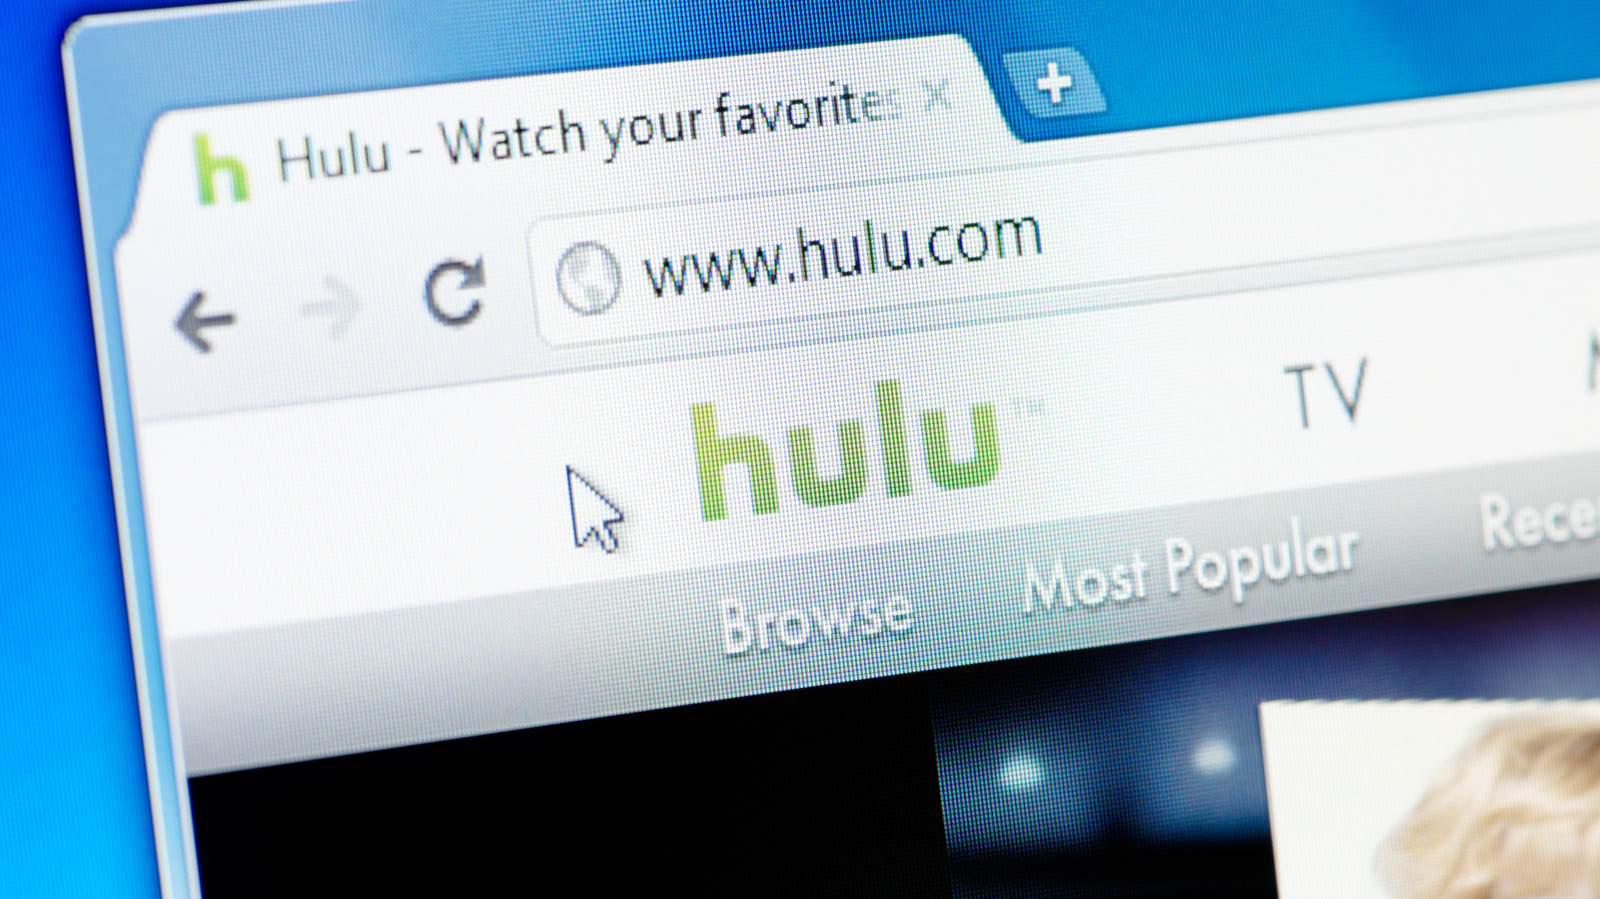 معامله جمعه سیاه Hulu یک سرقت مطلق است تا زمانی که به تبلیغات اهمیت ندهید